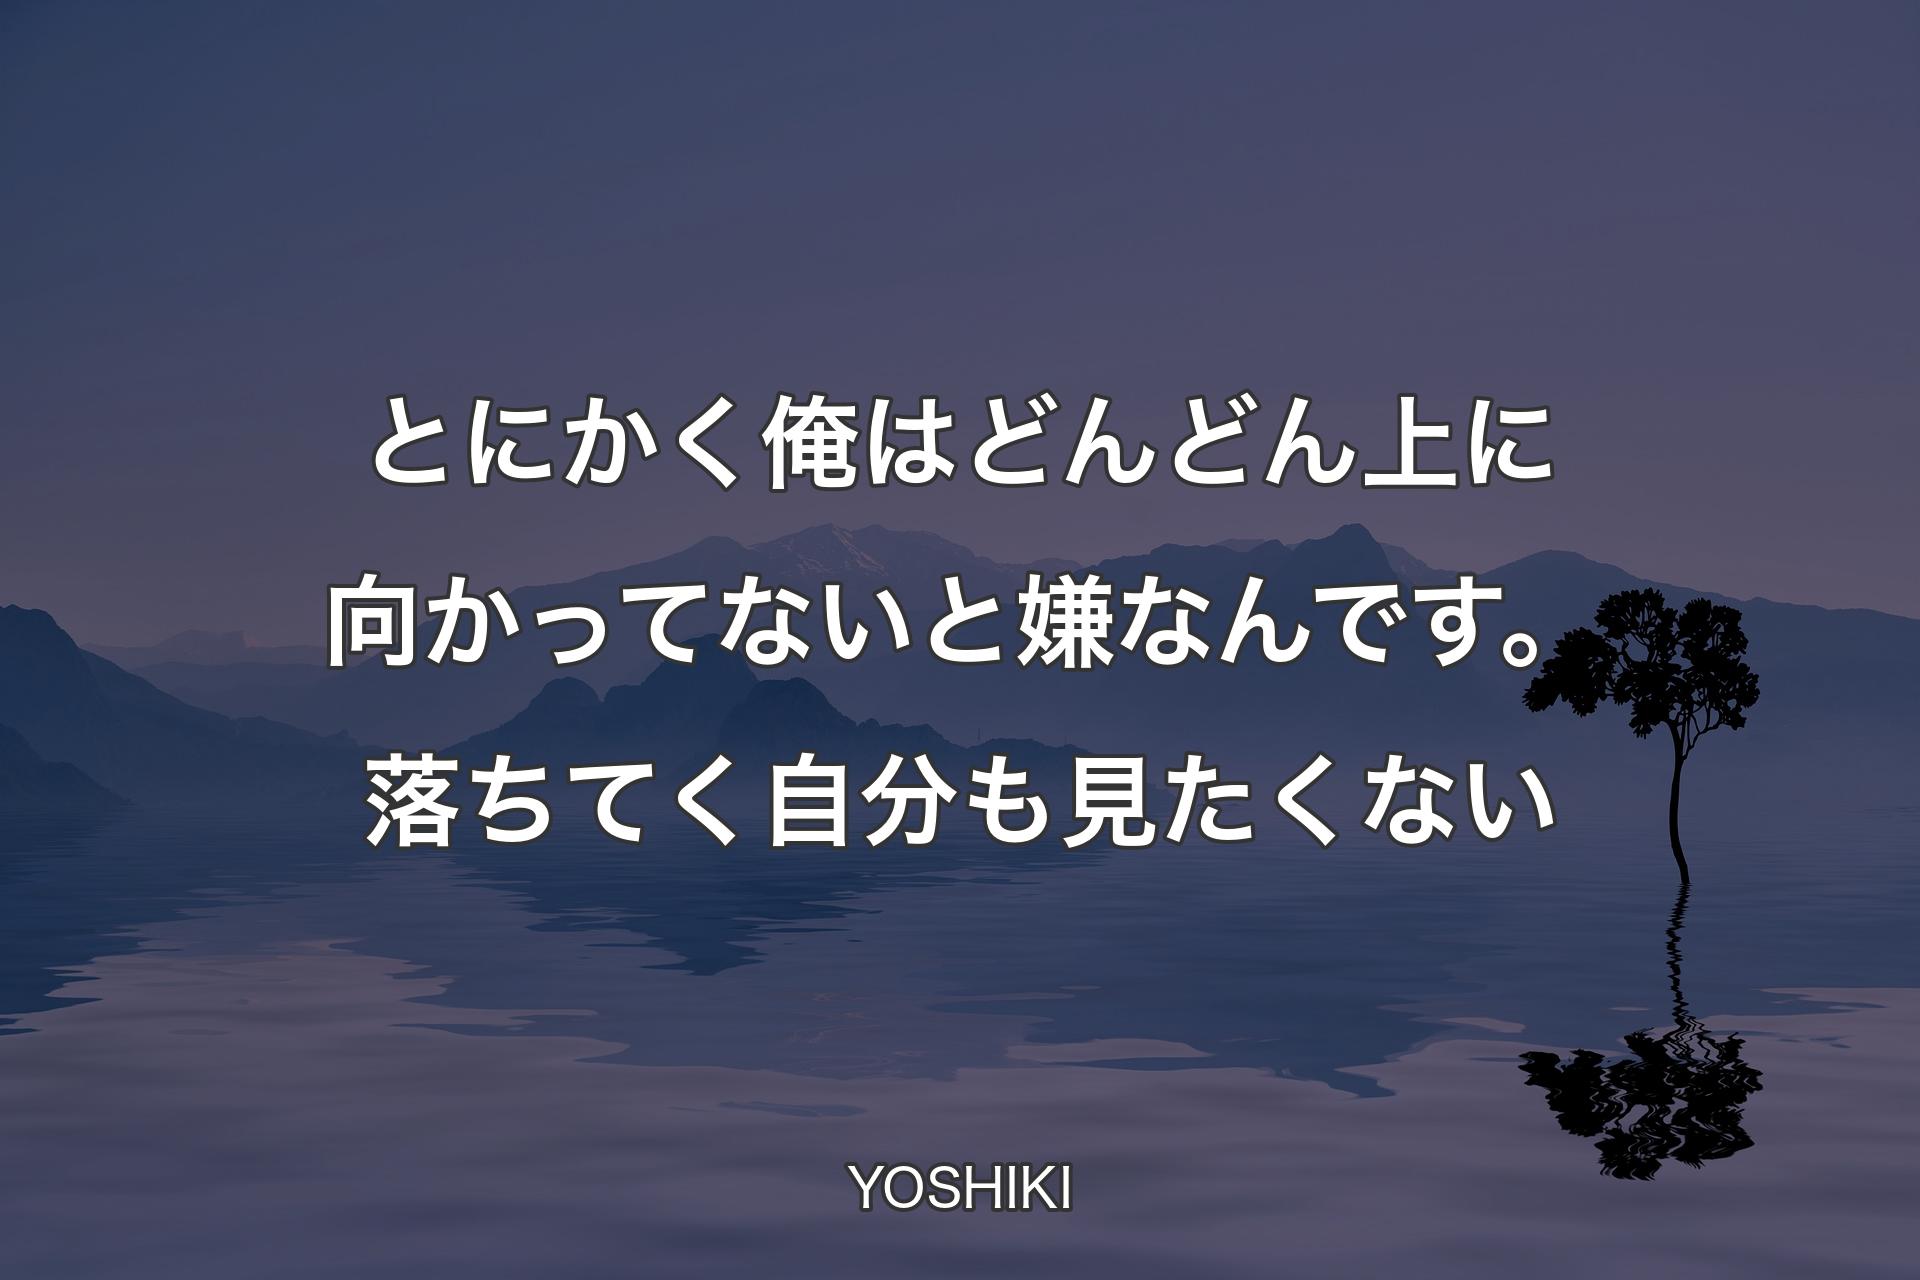 【背景4】とにかく俺はどんどん上に向かってないと嫌なんです。落ちてく自分も見たくない - YOSHIKI